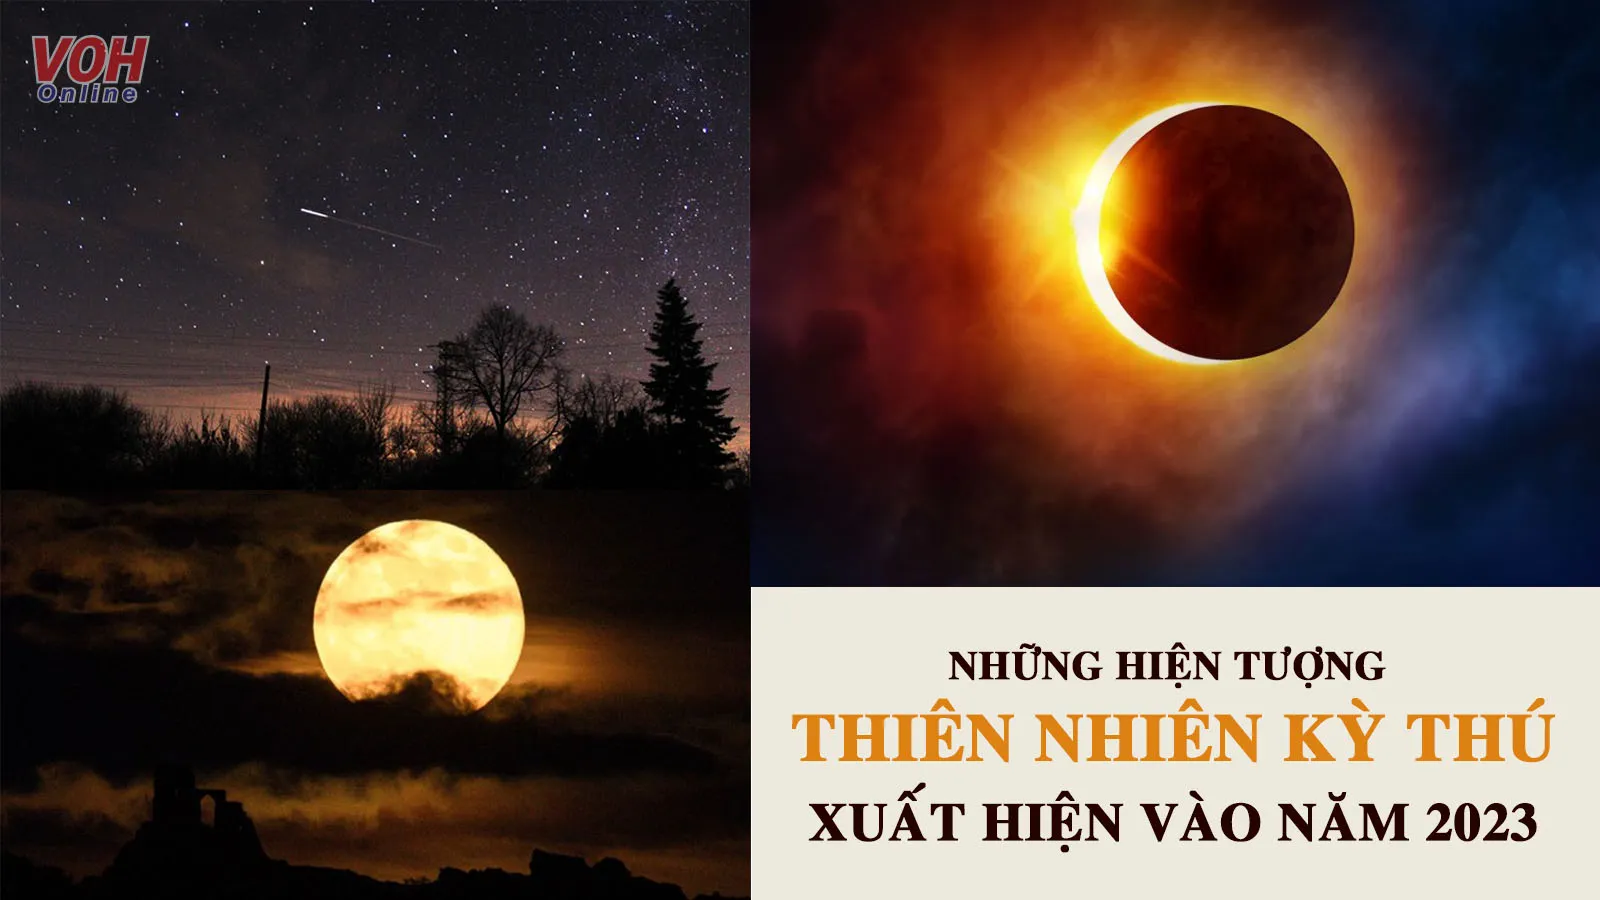 12 hiện tượng thiên văn kỳ thú sẽ xuất hiện tại Việt Nam năm 2023